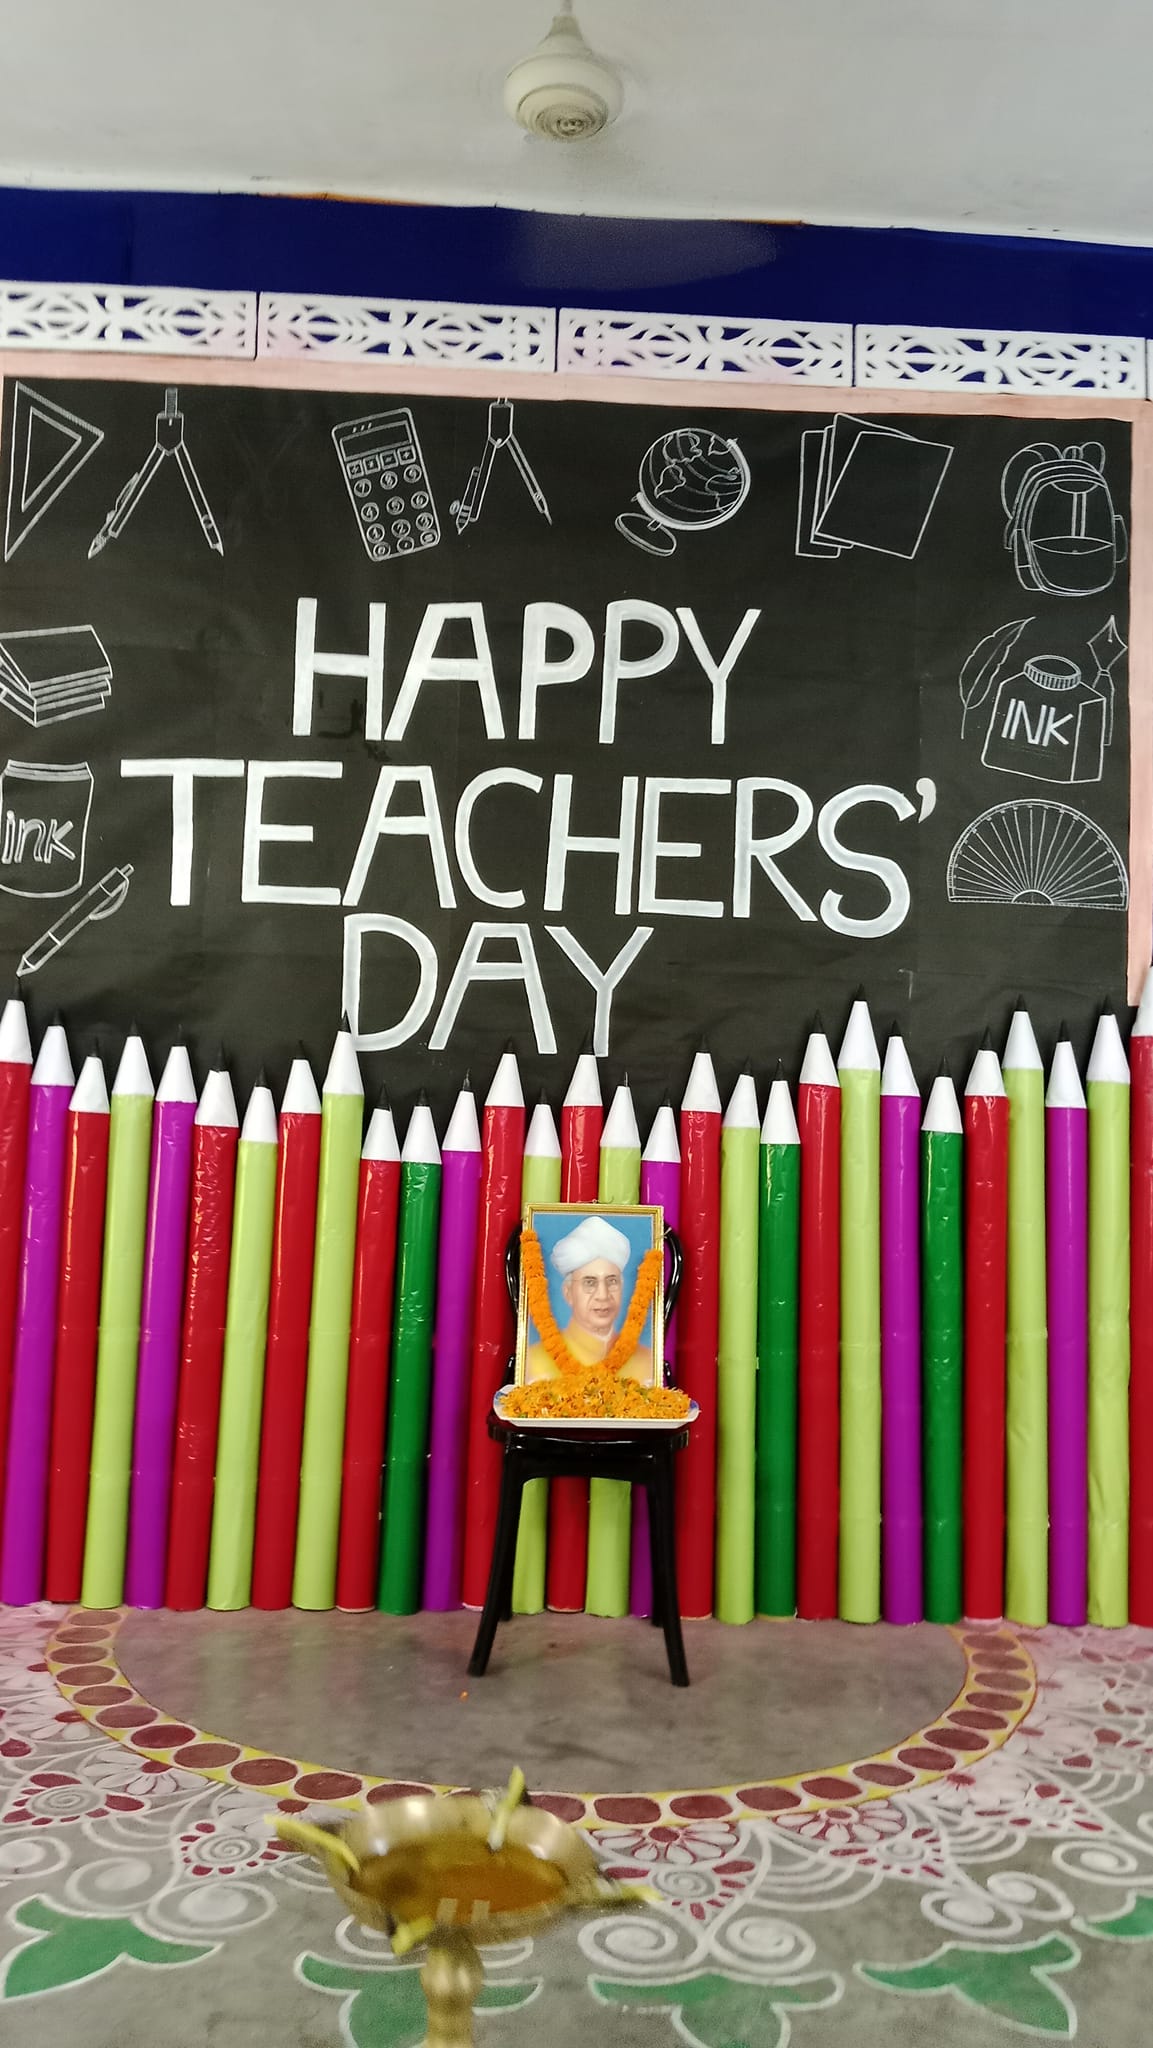 Teachers’ Day Celebration